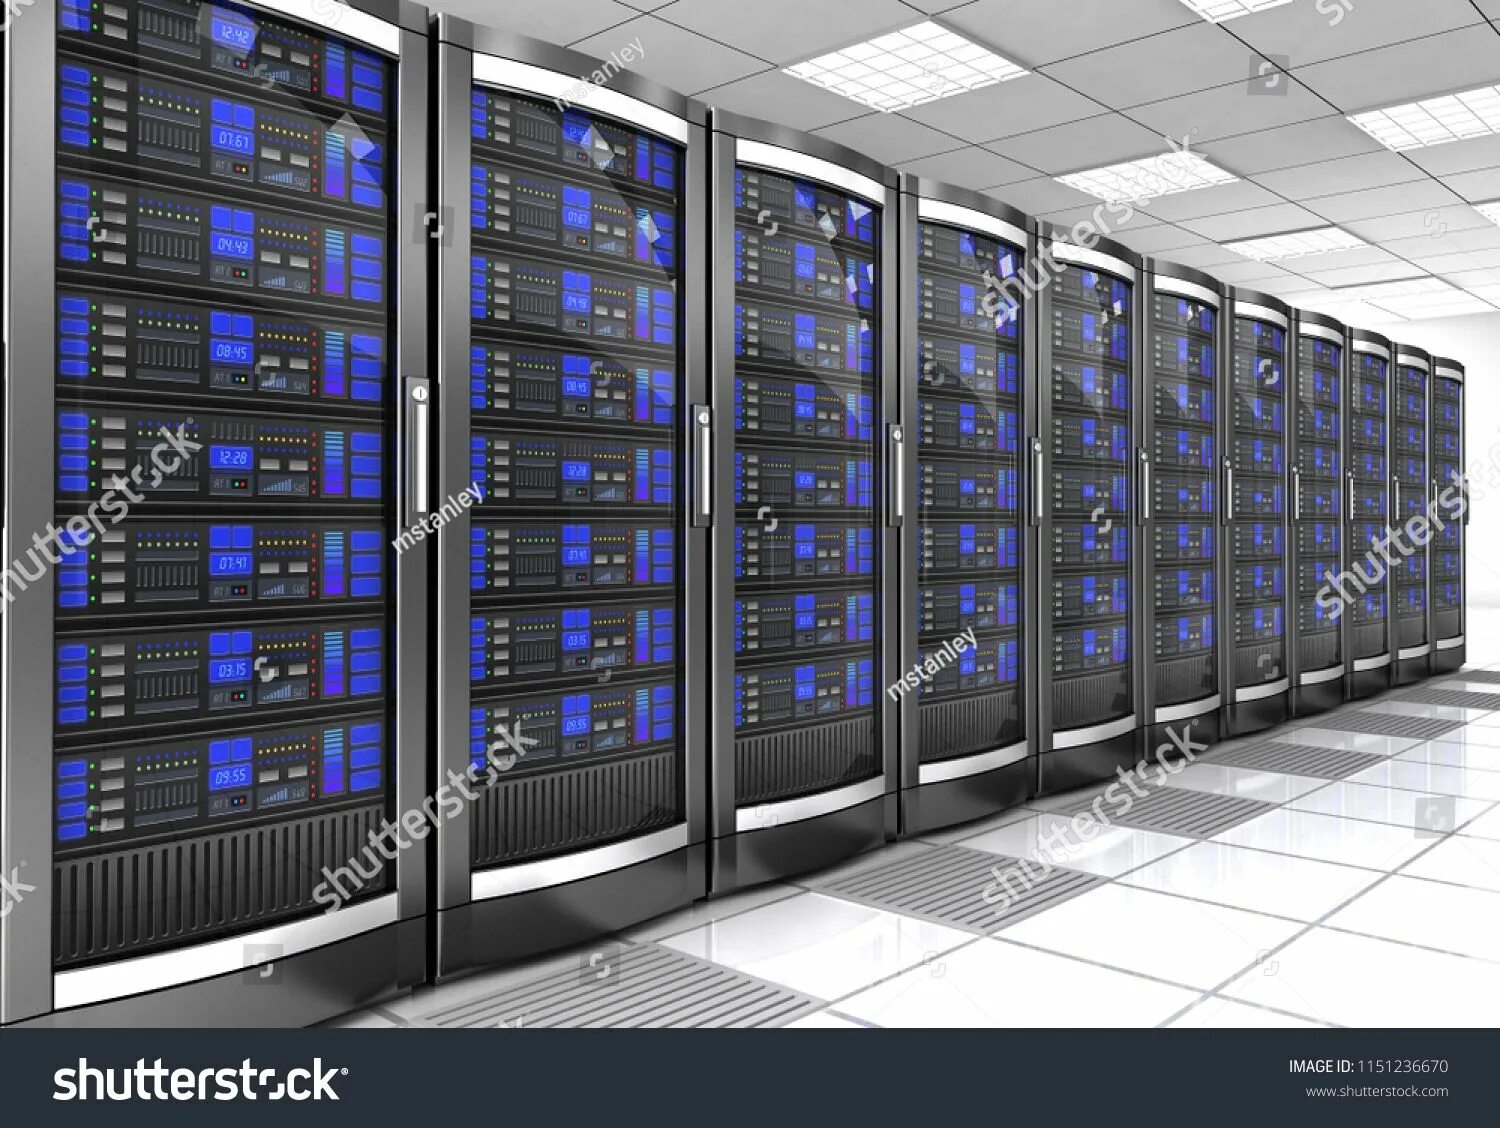 Вычислительные ис. Серверная. Компьютерное и серверное оборудование. Многопроцессорные суперкомпьютеры. Вычислительный комплекс.